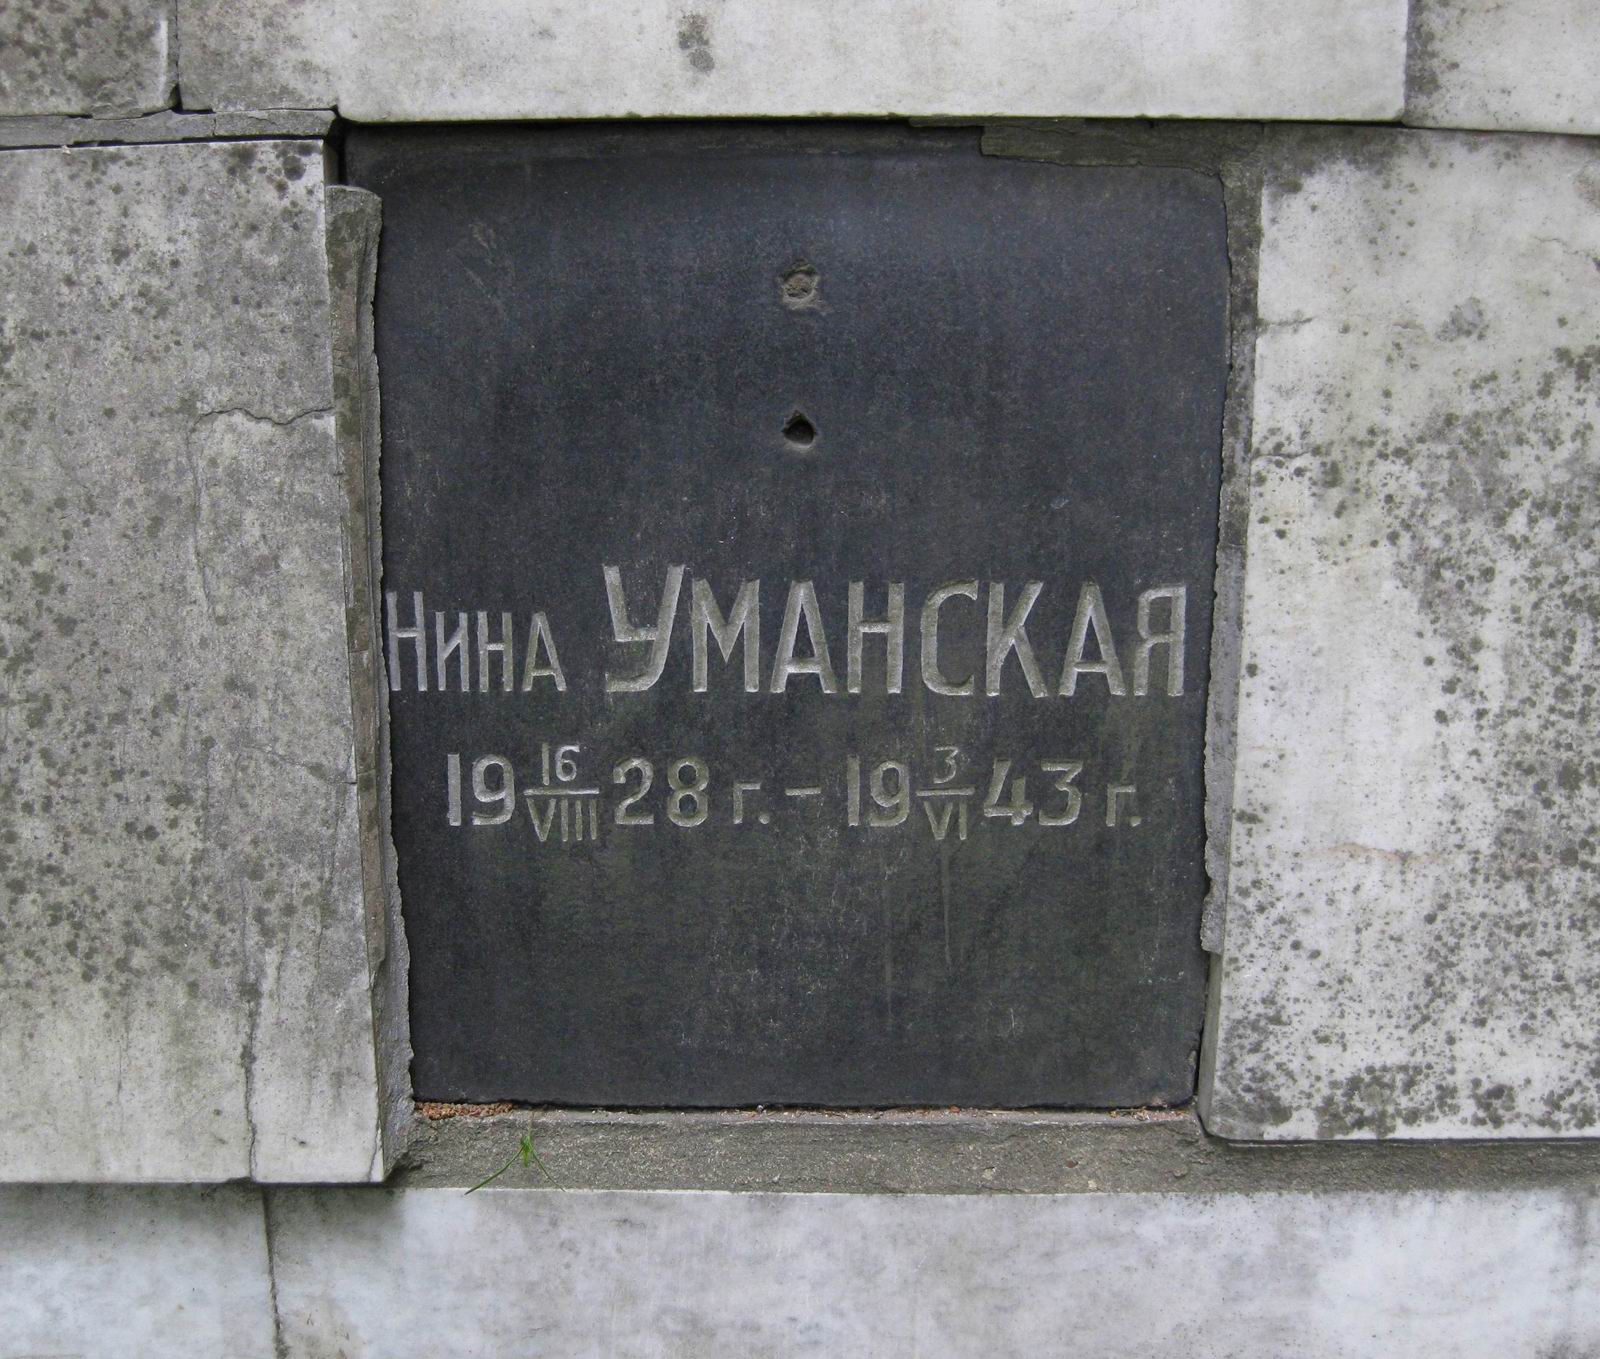 Плита на нише Уманской Н.К. (1928–1943), на Новодевичьем кладбище (колумбарий [1]–3–2). Нажмите левую кнопку мыши чтобы увидеть общий вид.